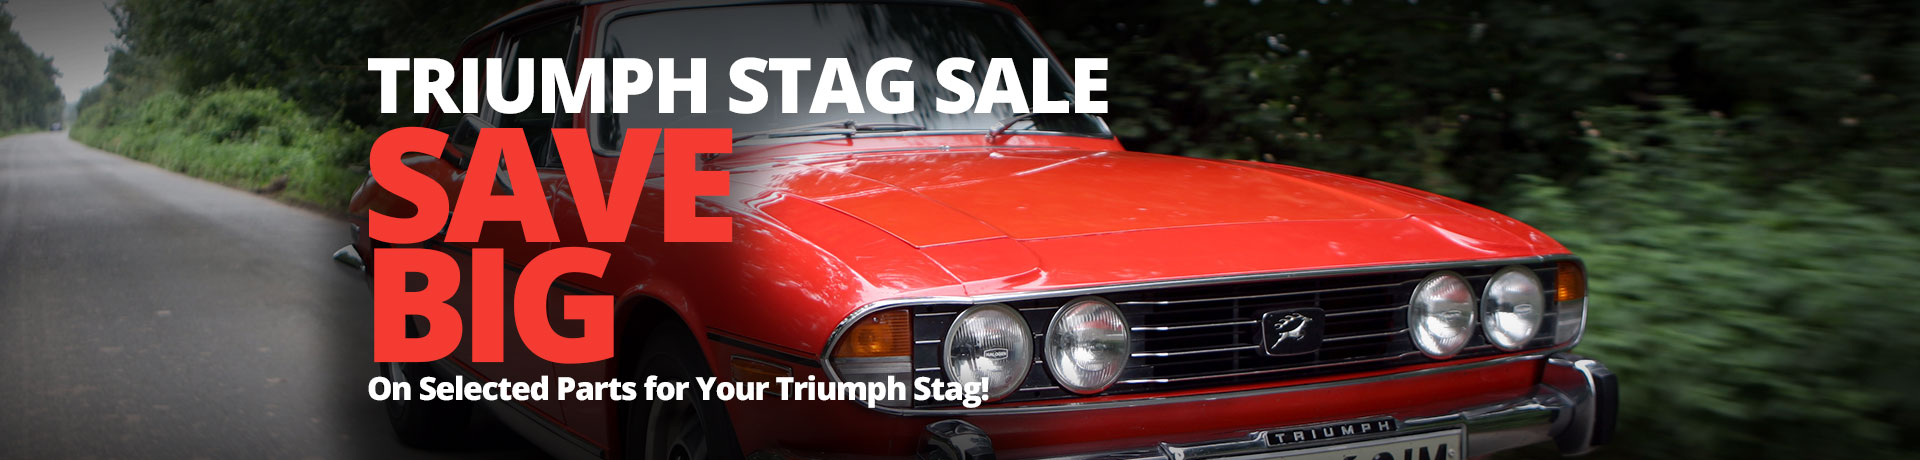 Triumph Stag Sale